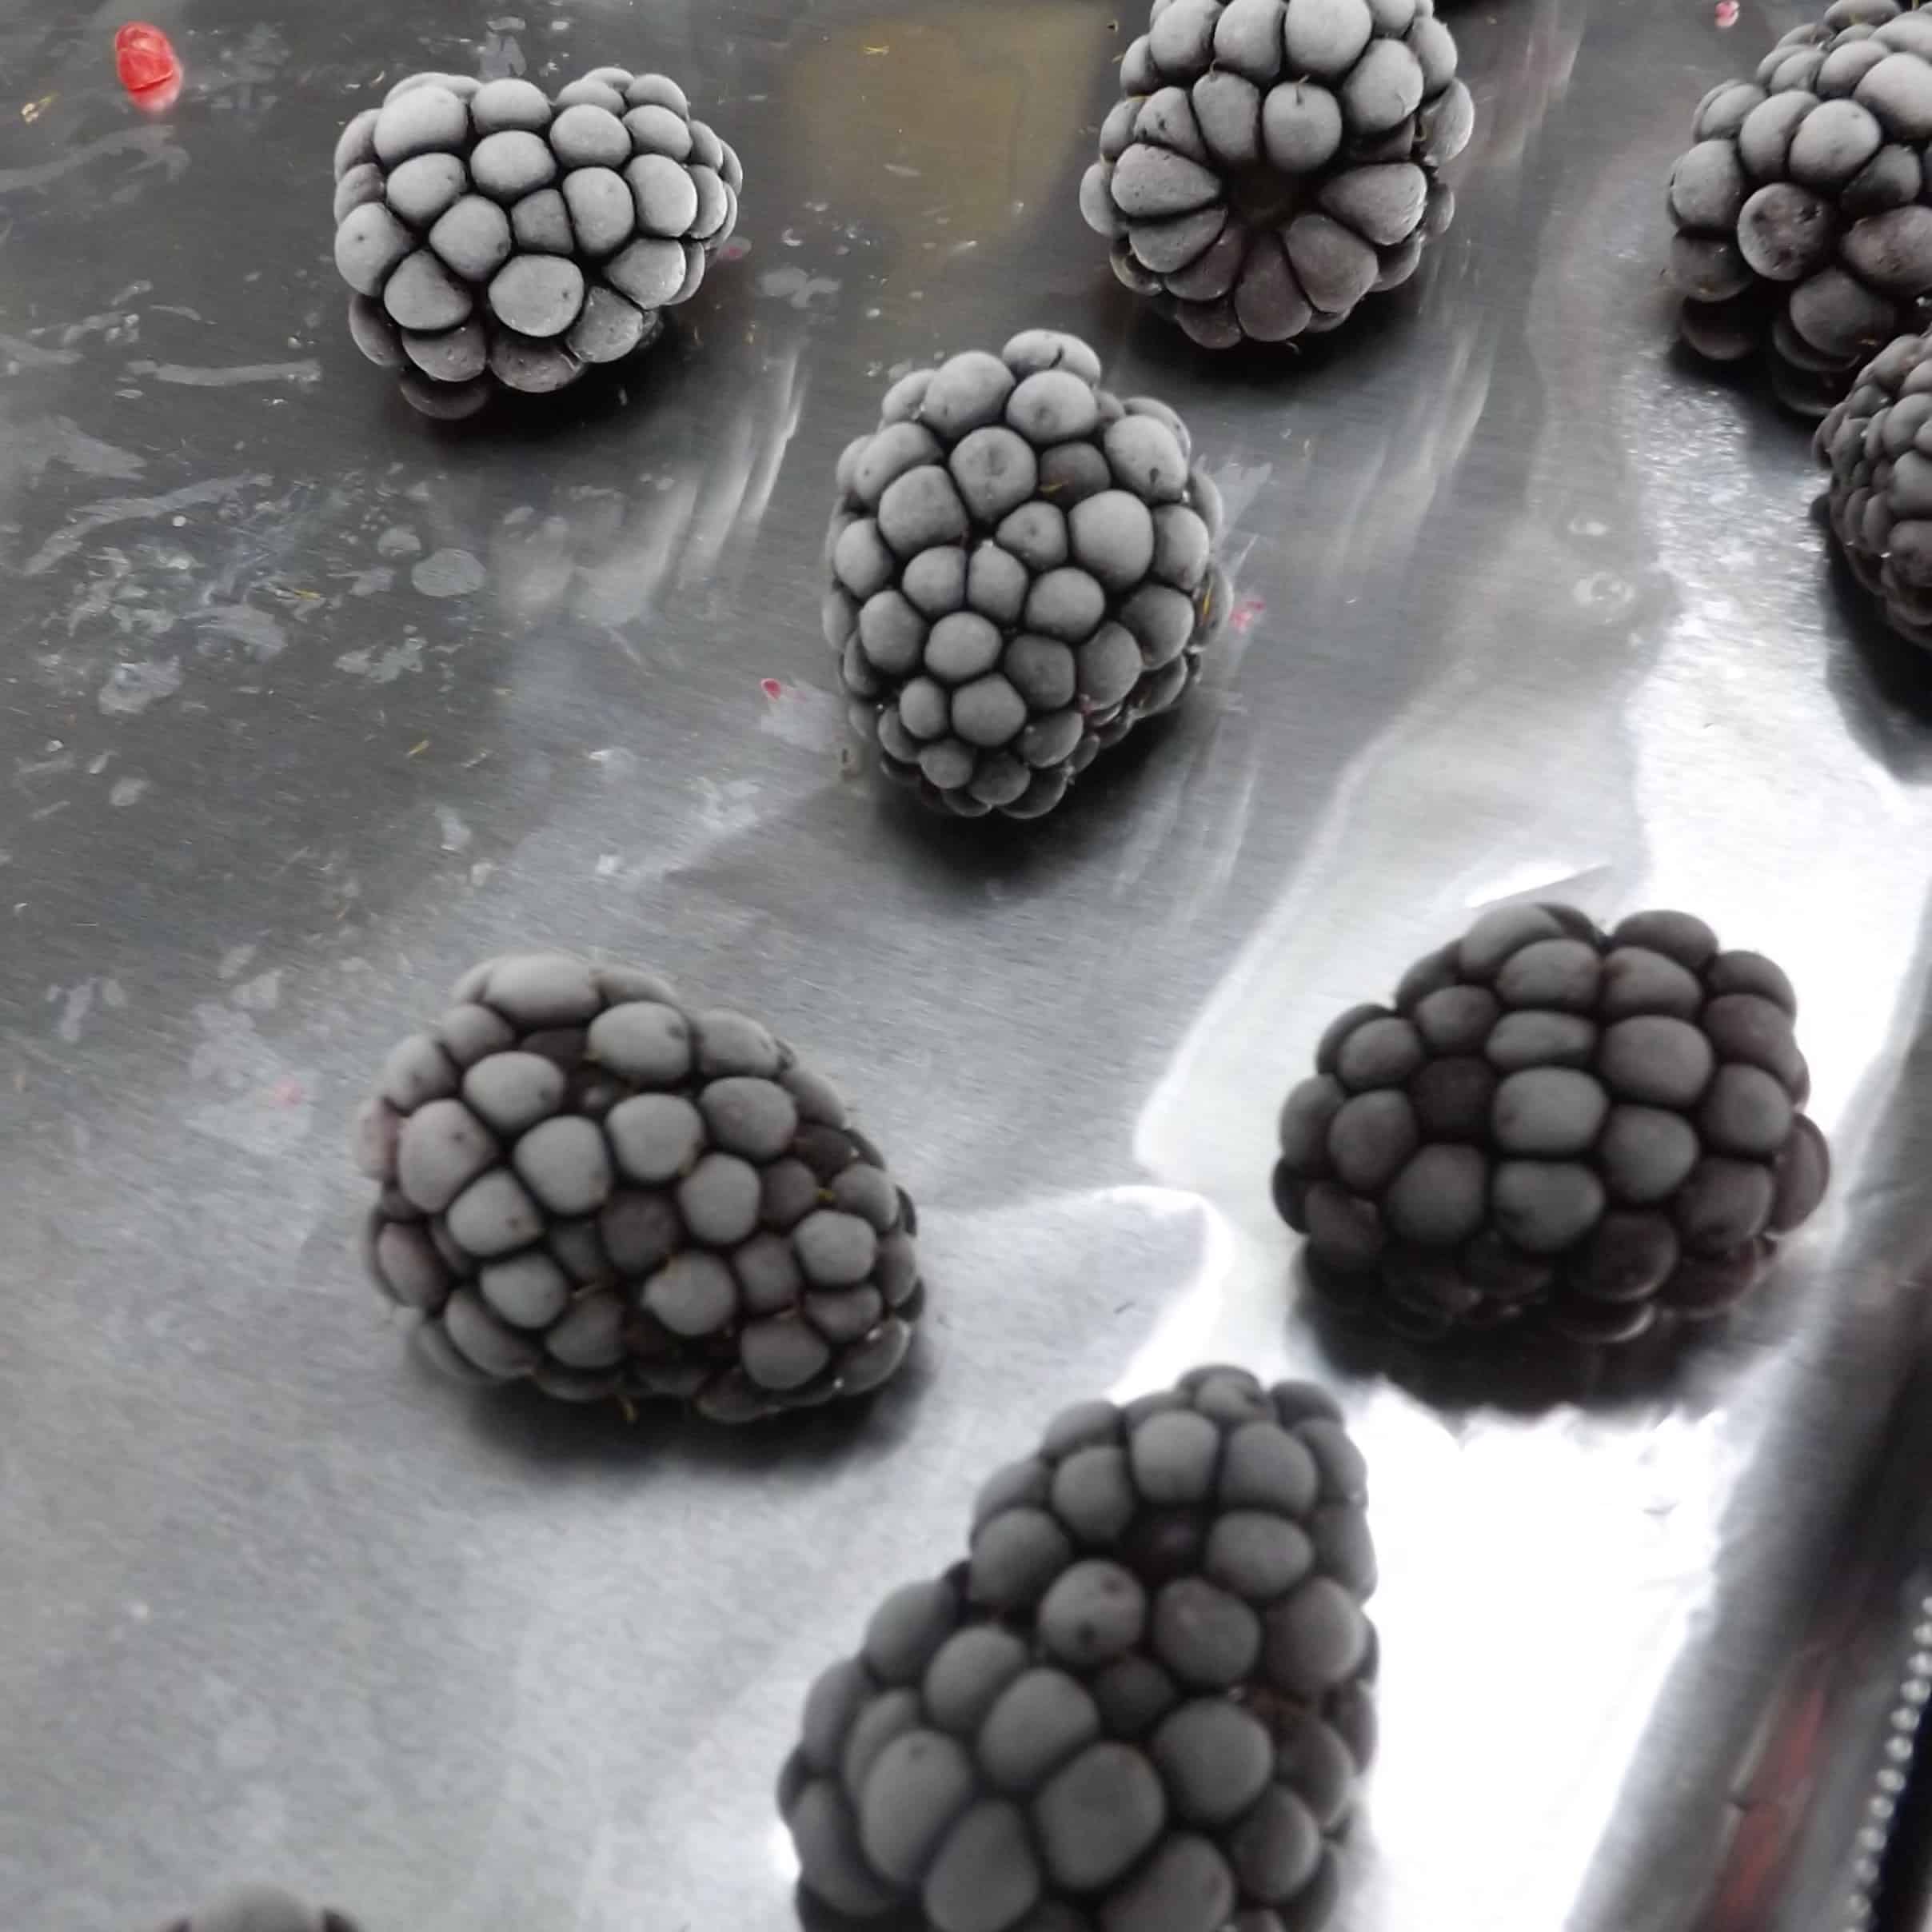 frozen blackberries on baking pan wrapped in foil